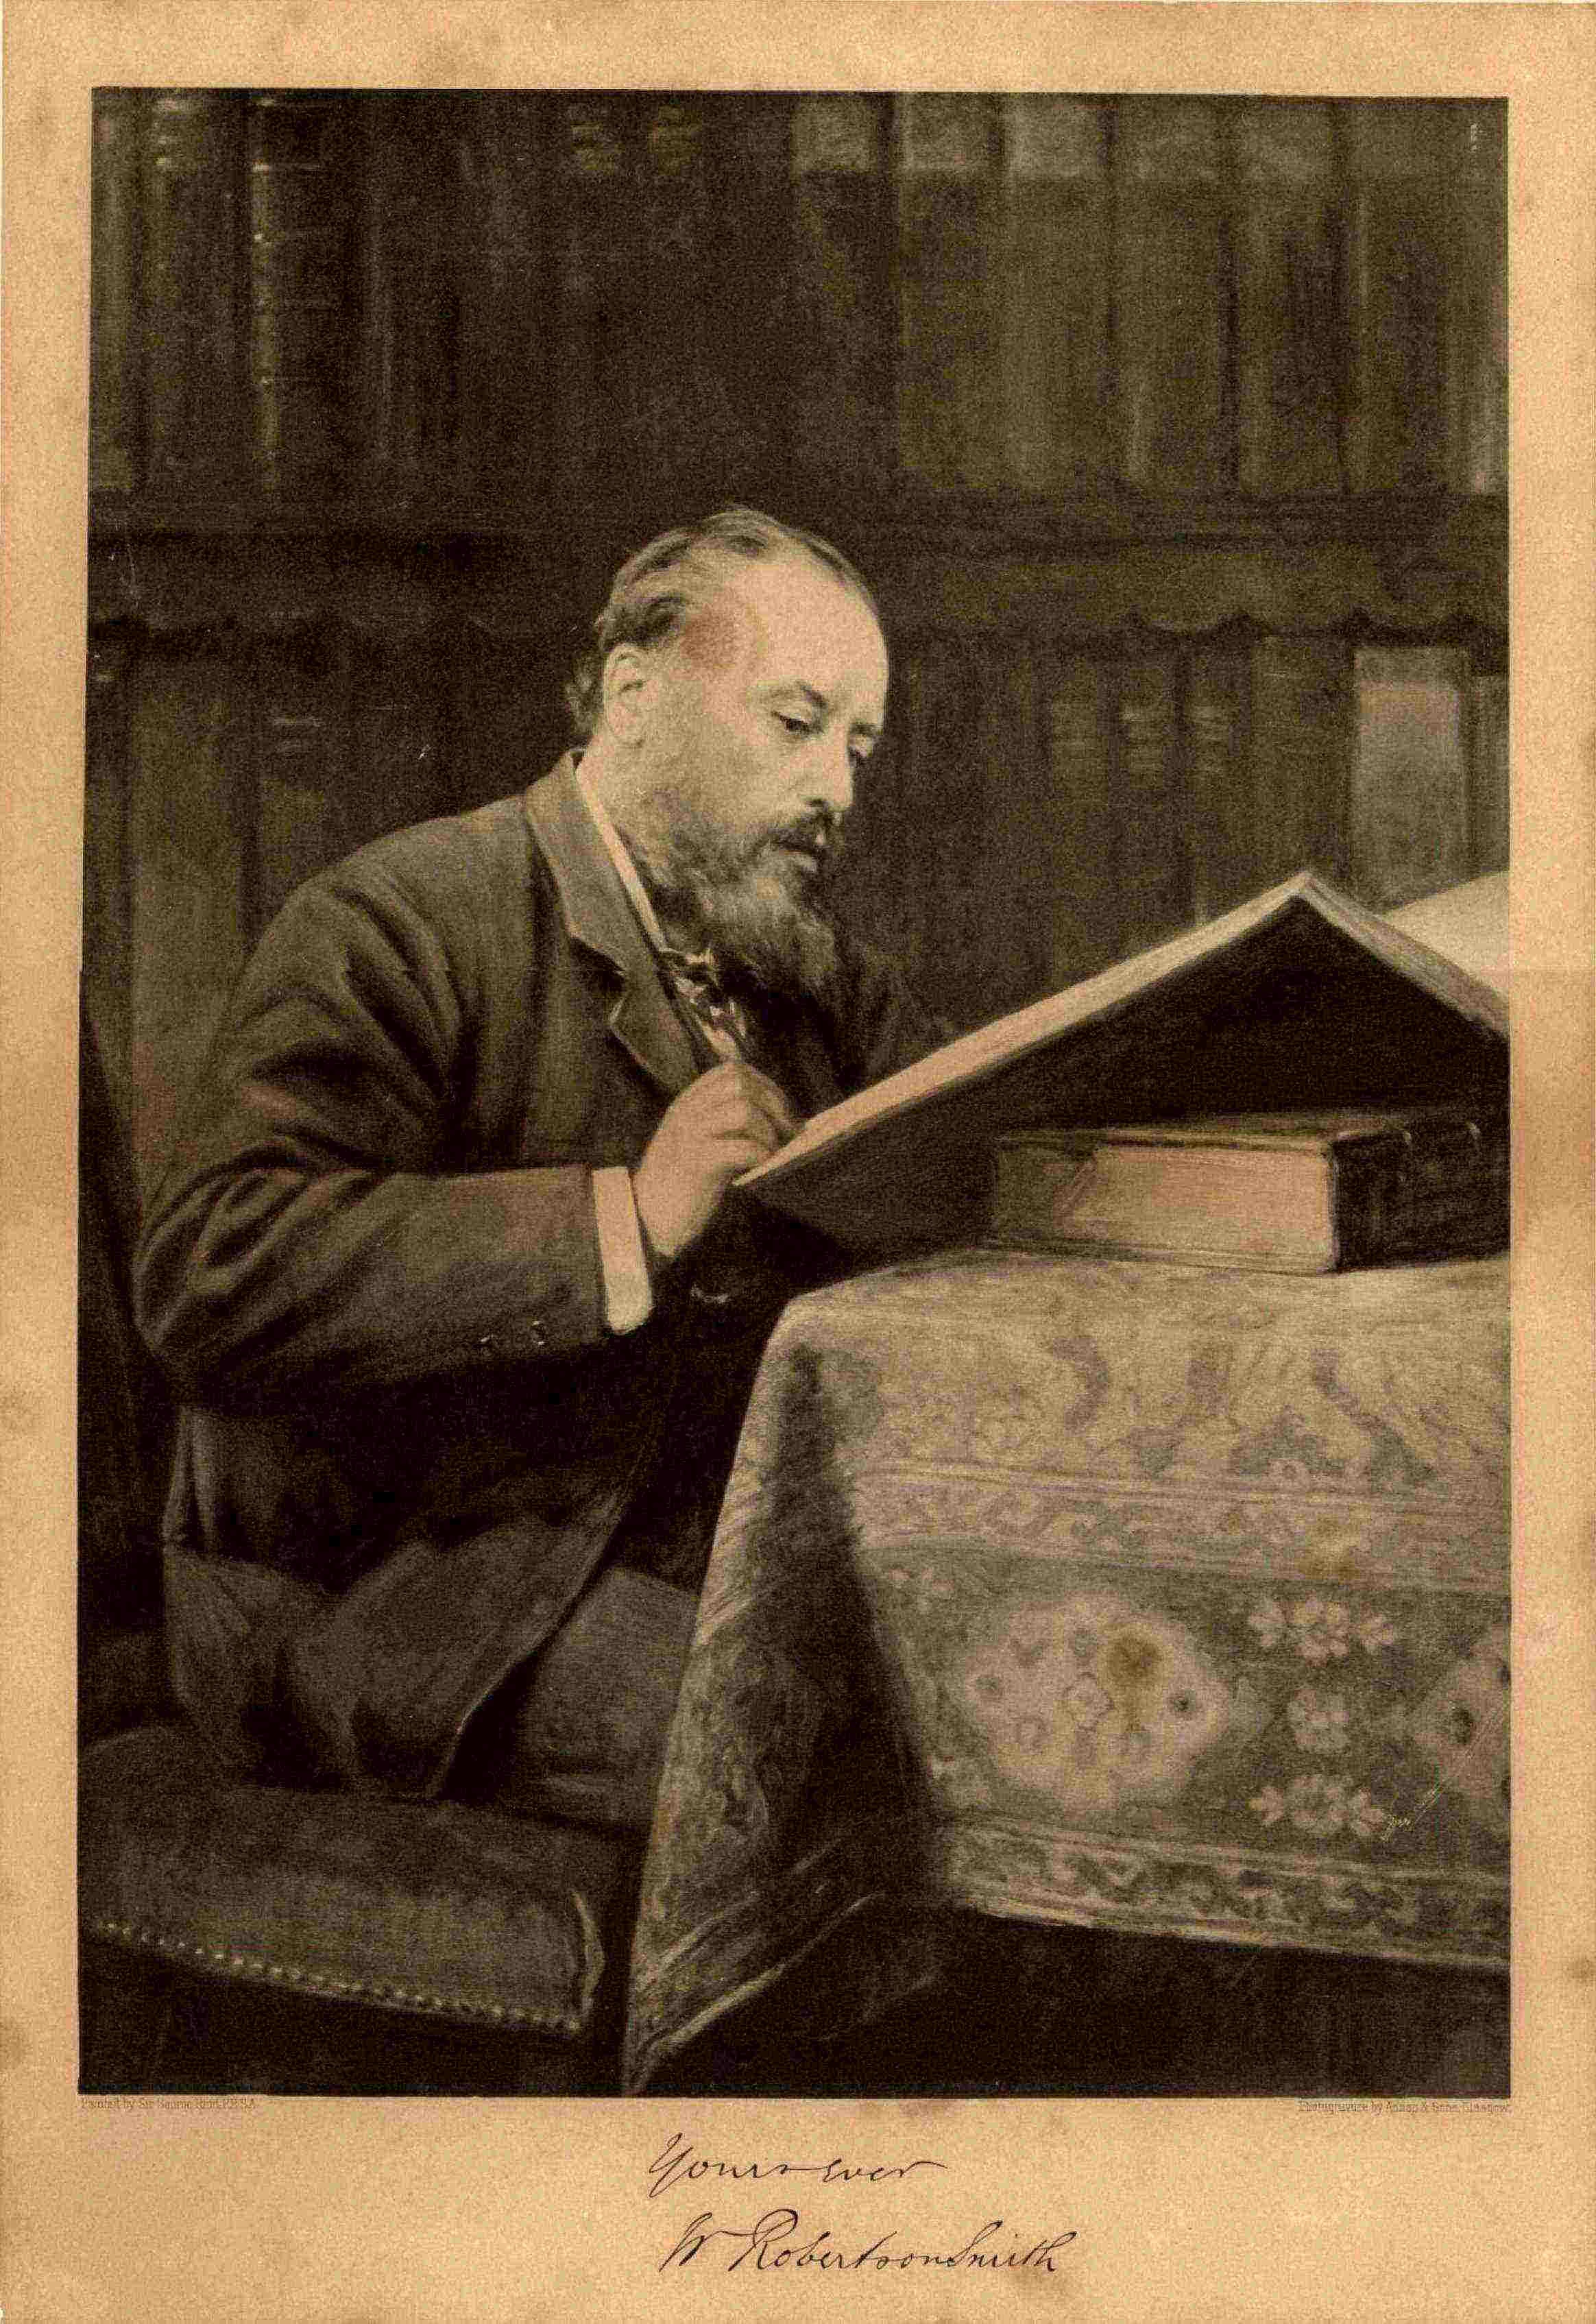 Photogravure, George Reid, 1894, FP